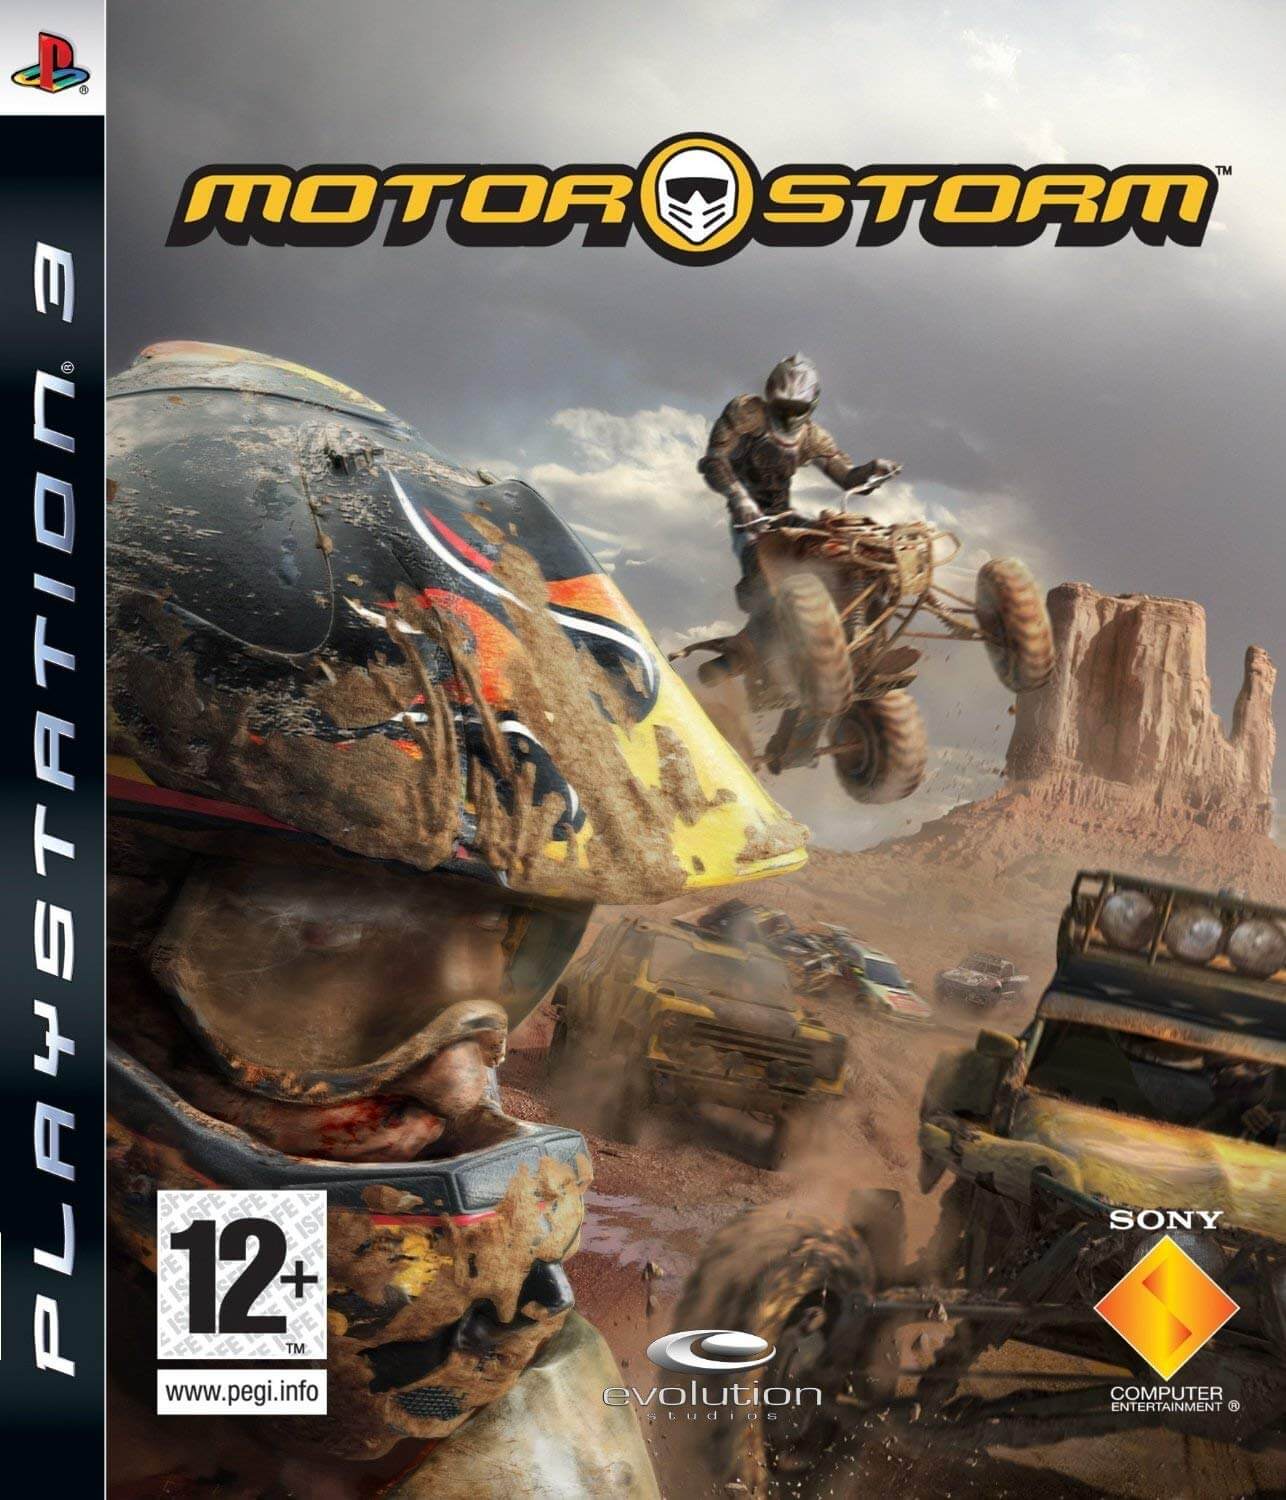 Motorstorm - PS3 ISO - Playstation 3 ROMS